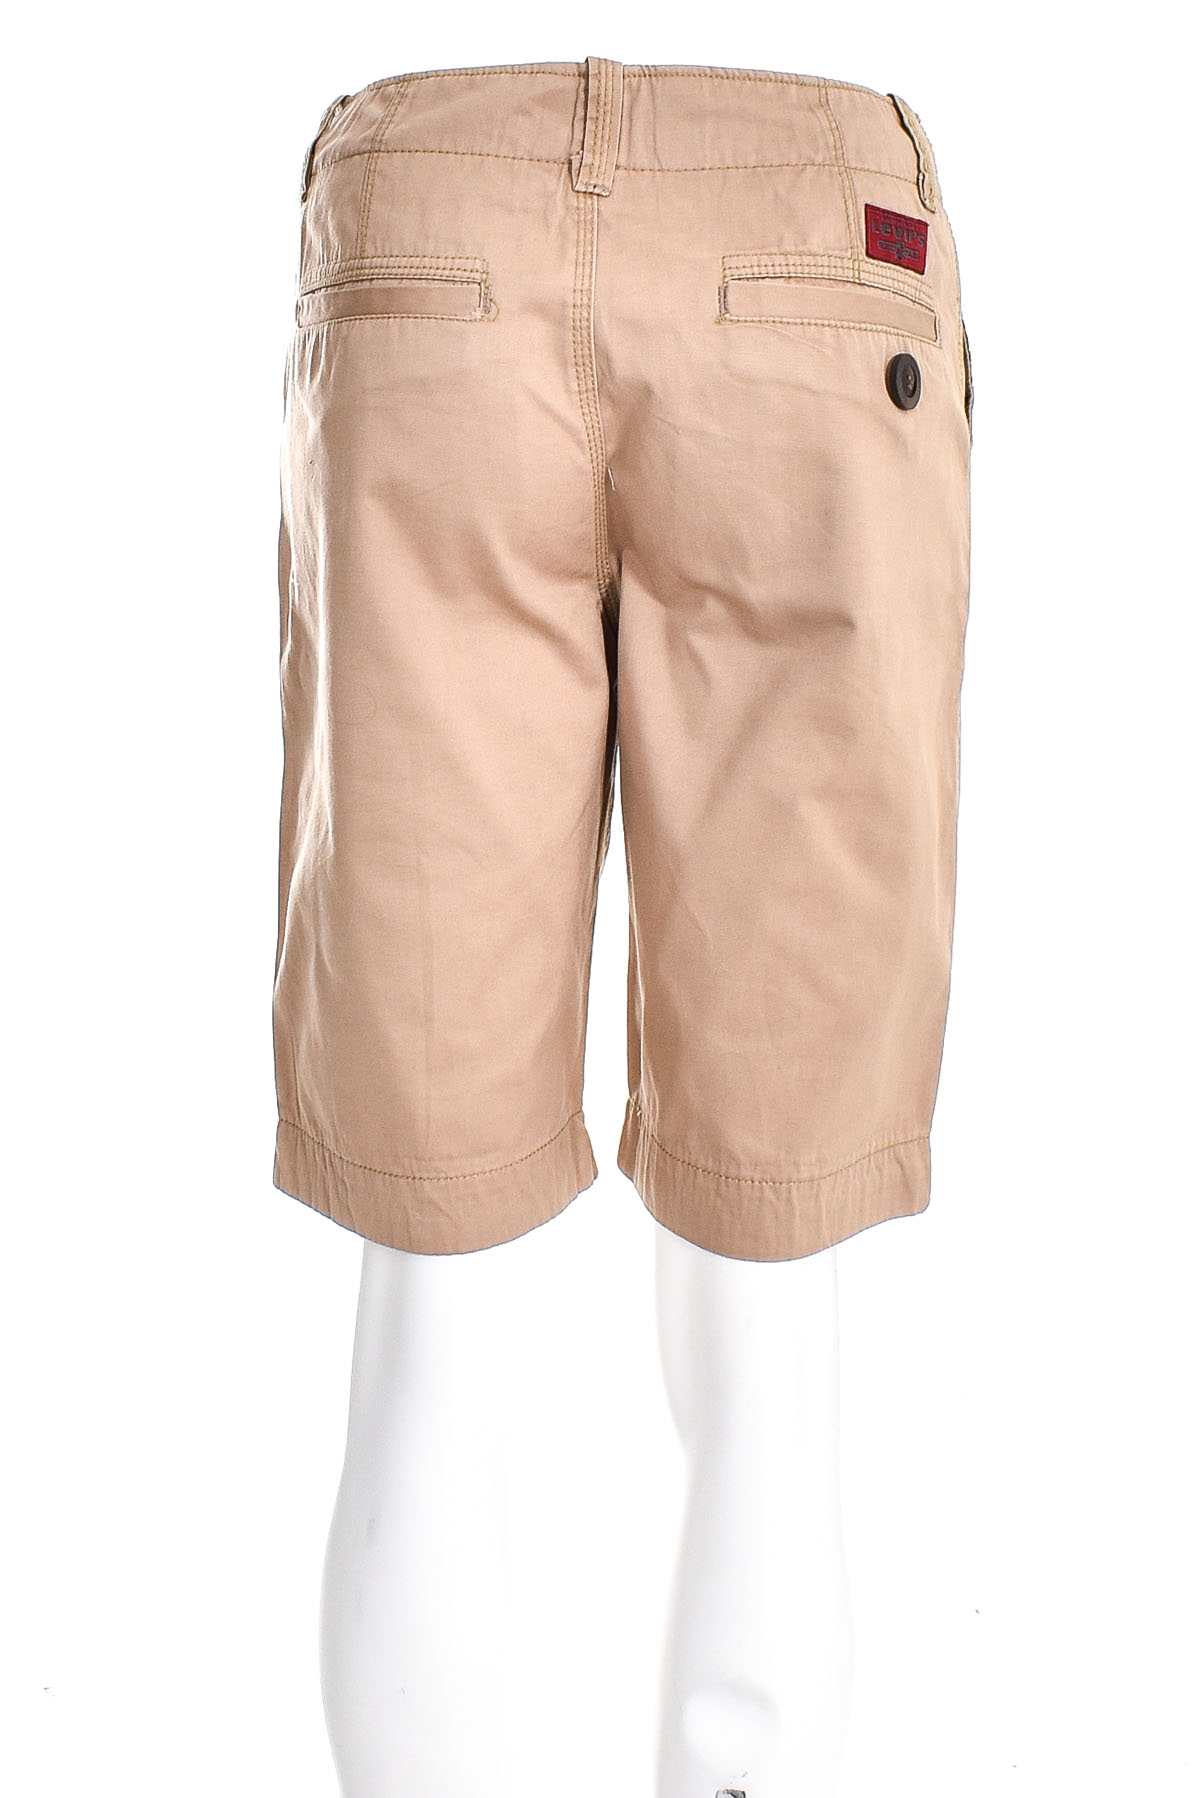 Men's shorts - LEVI'S - 1